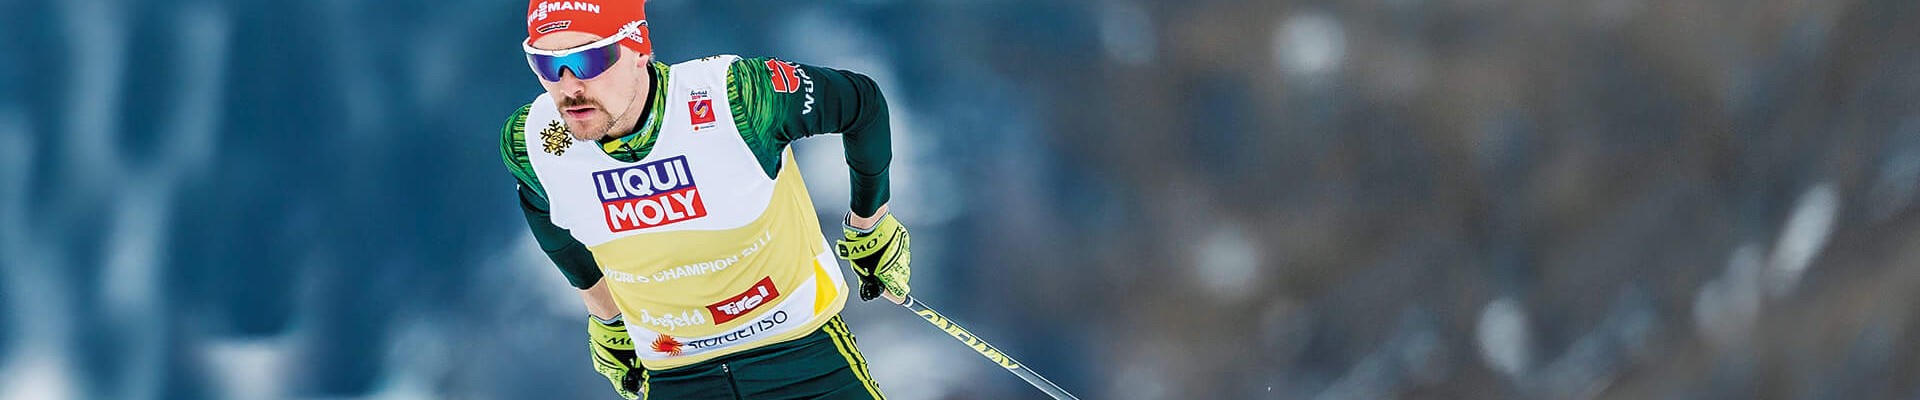 Bei den Nordischen Skiweltmeisterschaften in Seefeld holte Fabian Rießle 2019, gemeinsam mit Eric Frenzel, Gold im Teamsprint. Nicht nur für seine Kunden, sondern auch im Sport ist Würth ein verlässlicher und starker Partner, zum Beispiel als Hauptsponsor des Deutschen Skiverbands.